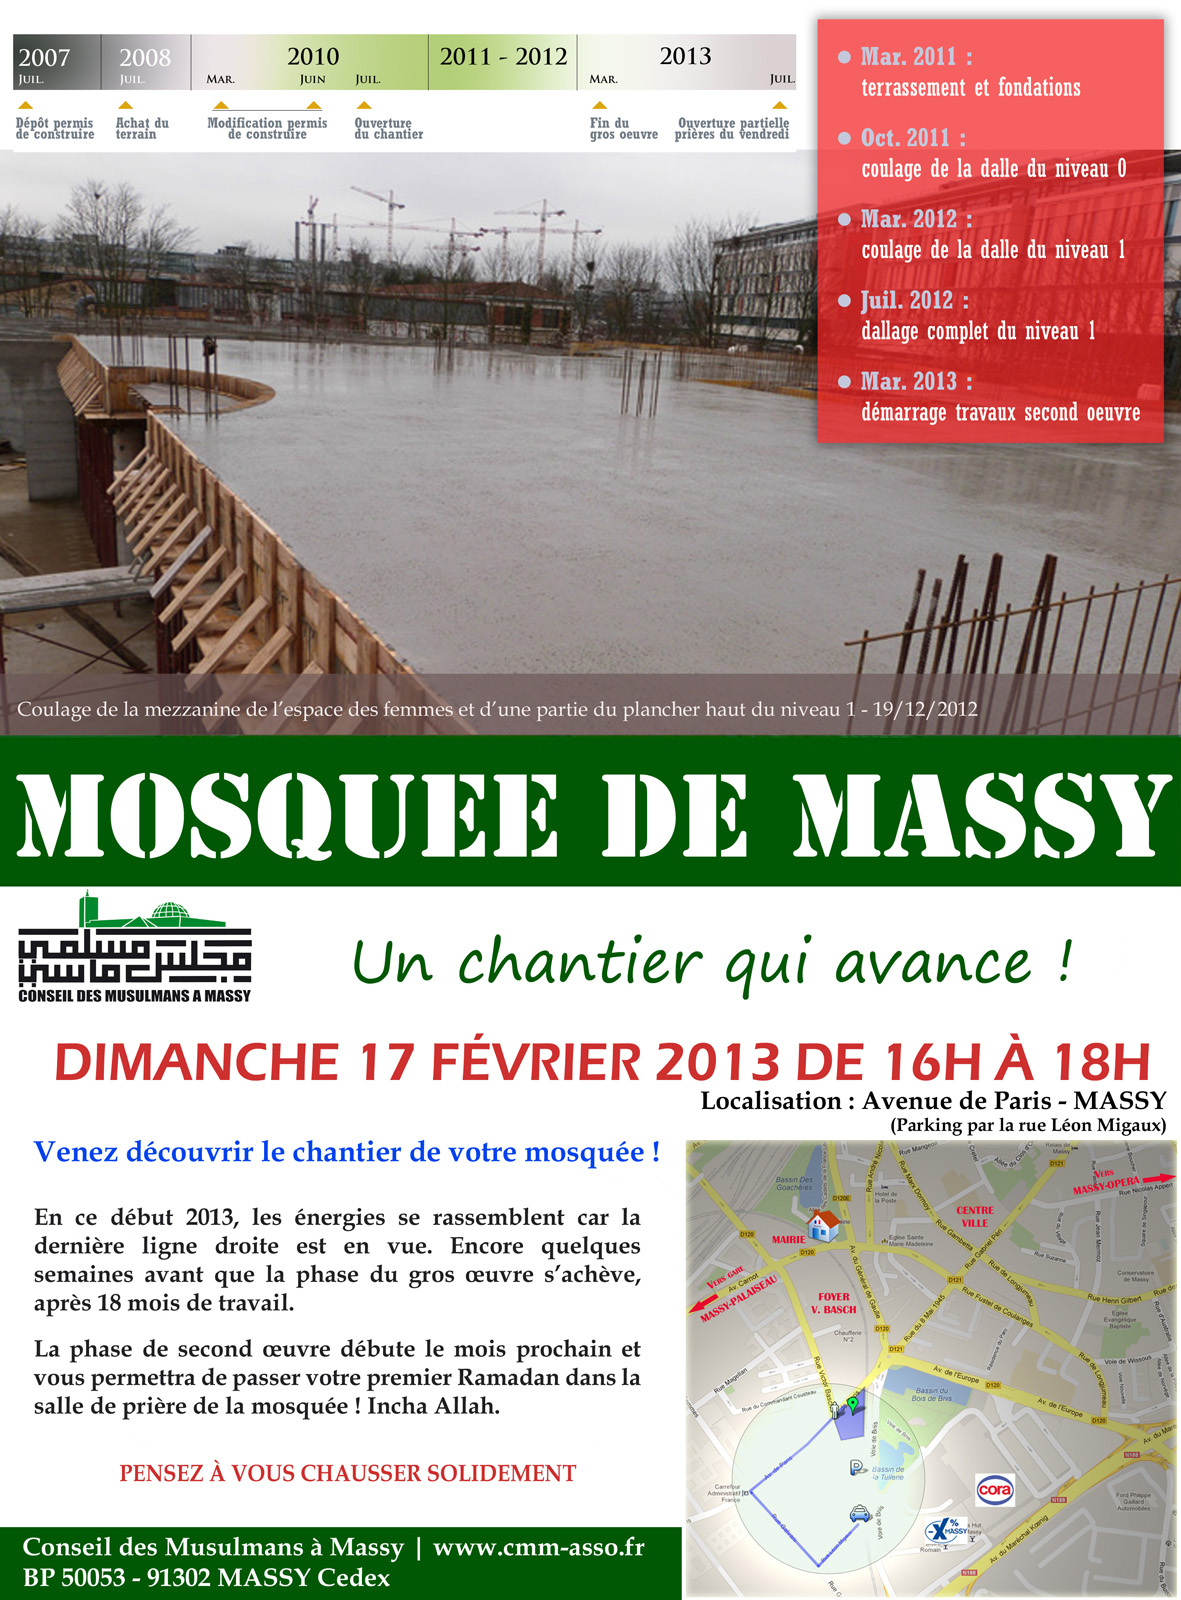 Affiche visite du chantier de la mosquée de Massy - Dim. 17/02/2013